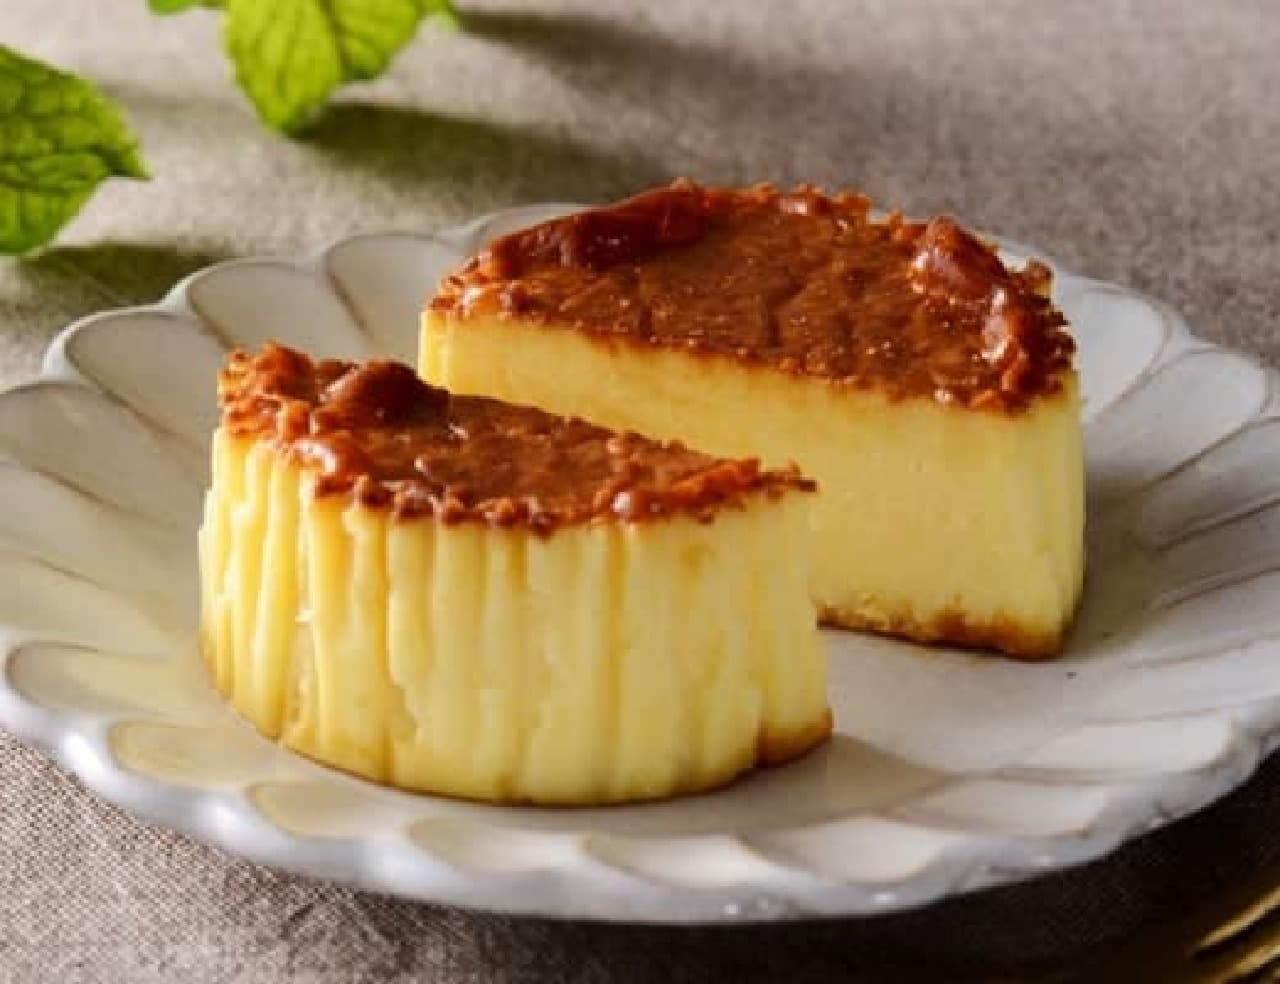 Lawson "Bastie -Basque style cheesecake-"